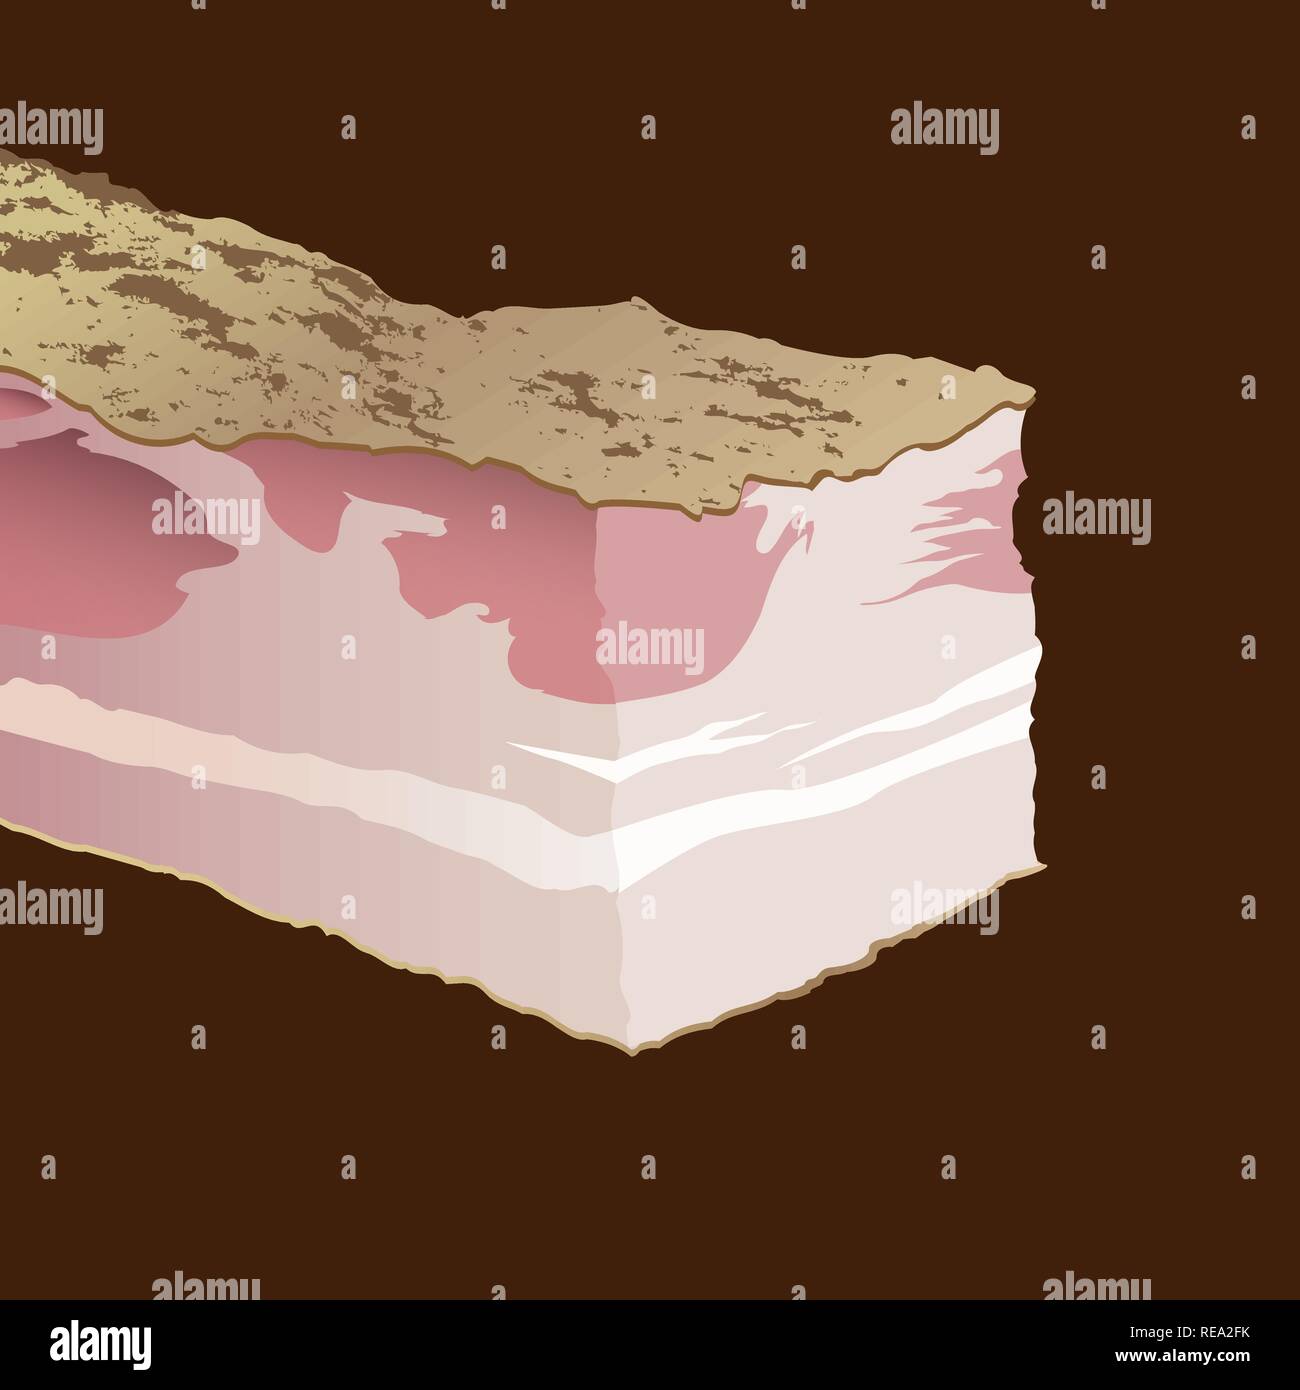 Ferienaufenthalt von rohem Schweinefleisch fetten Speck auf einem braunen Hintergrund Stock Vektor